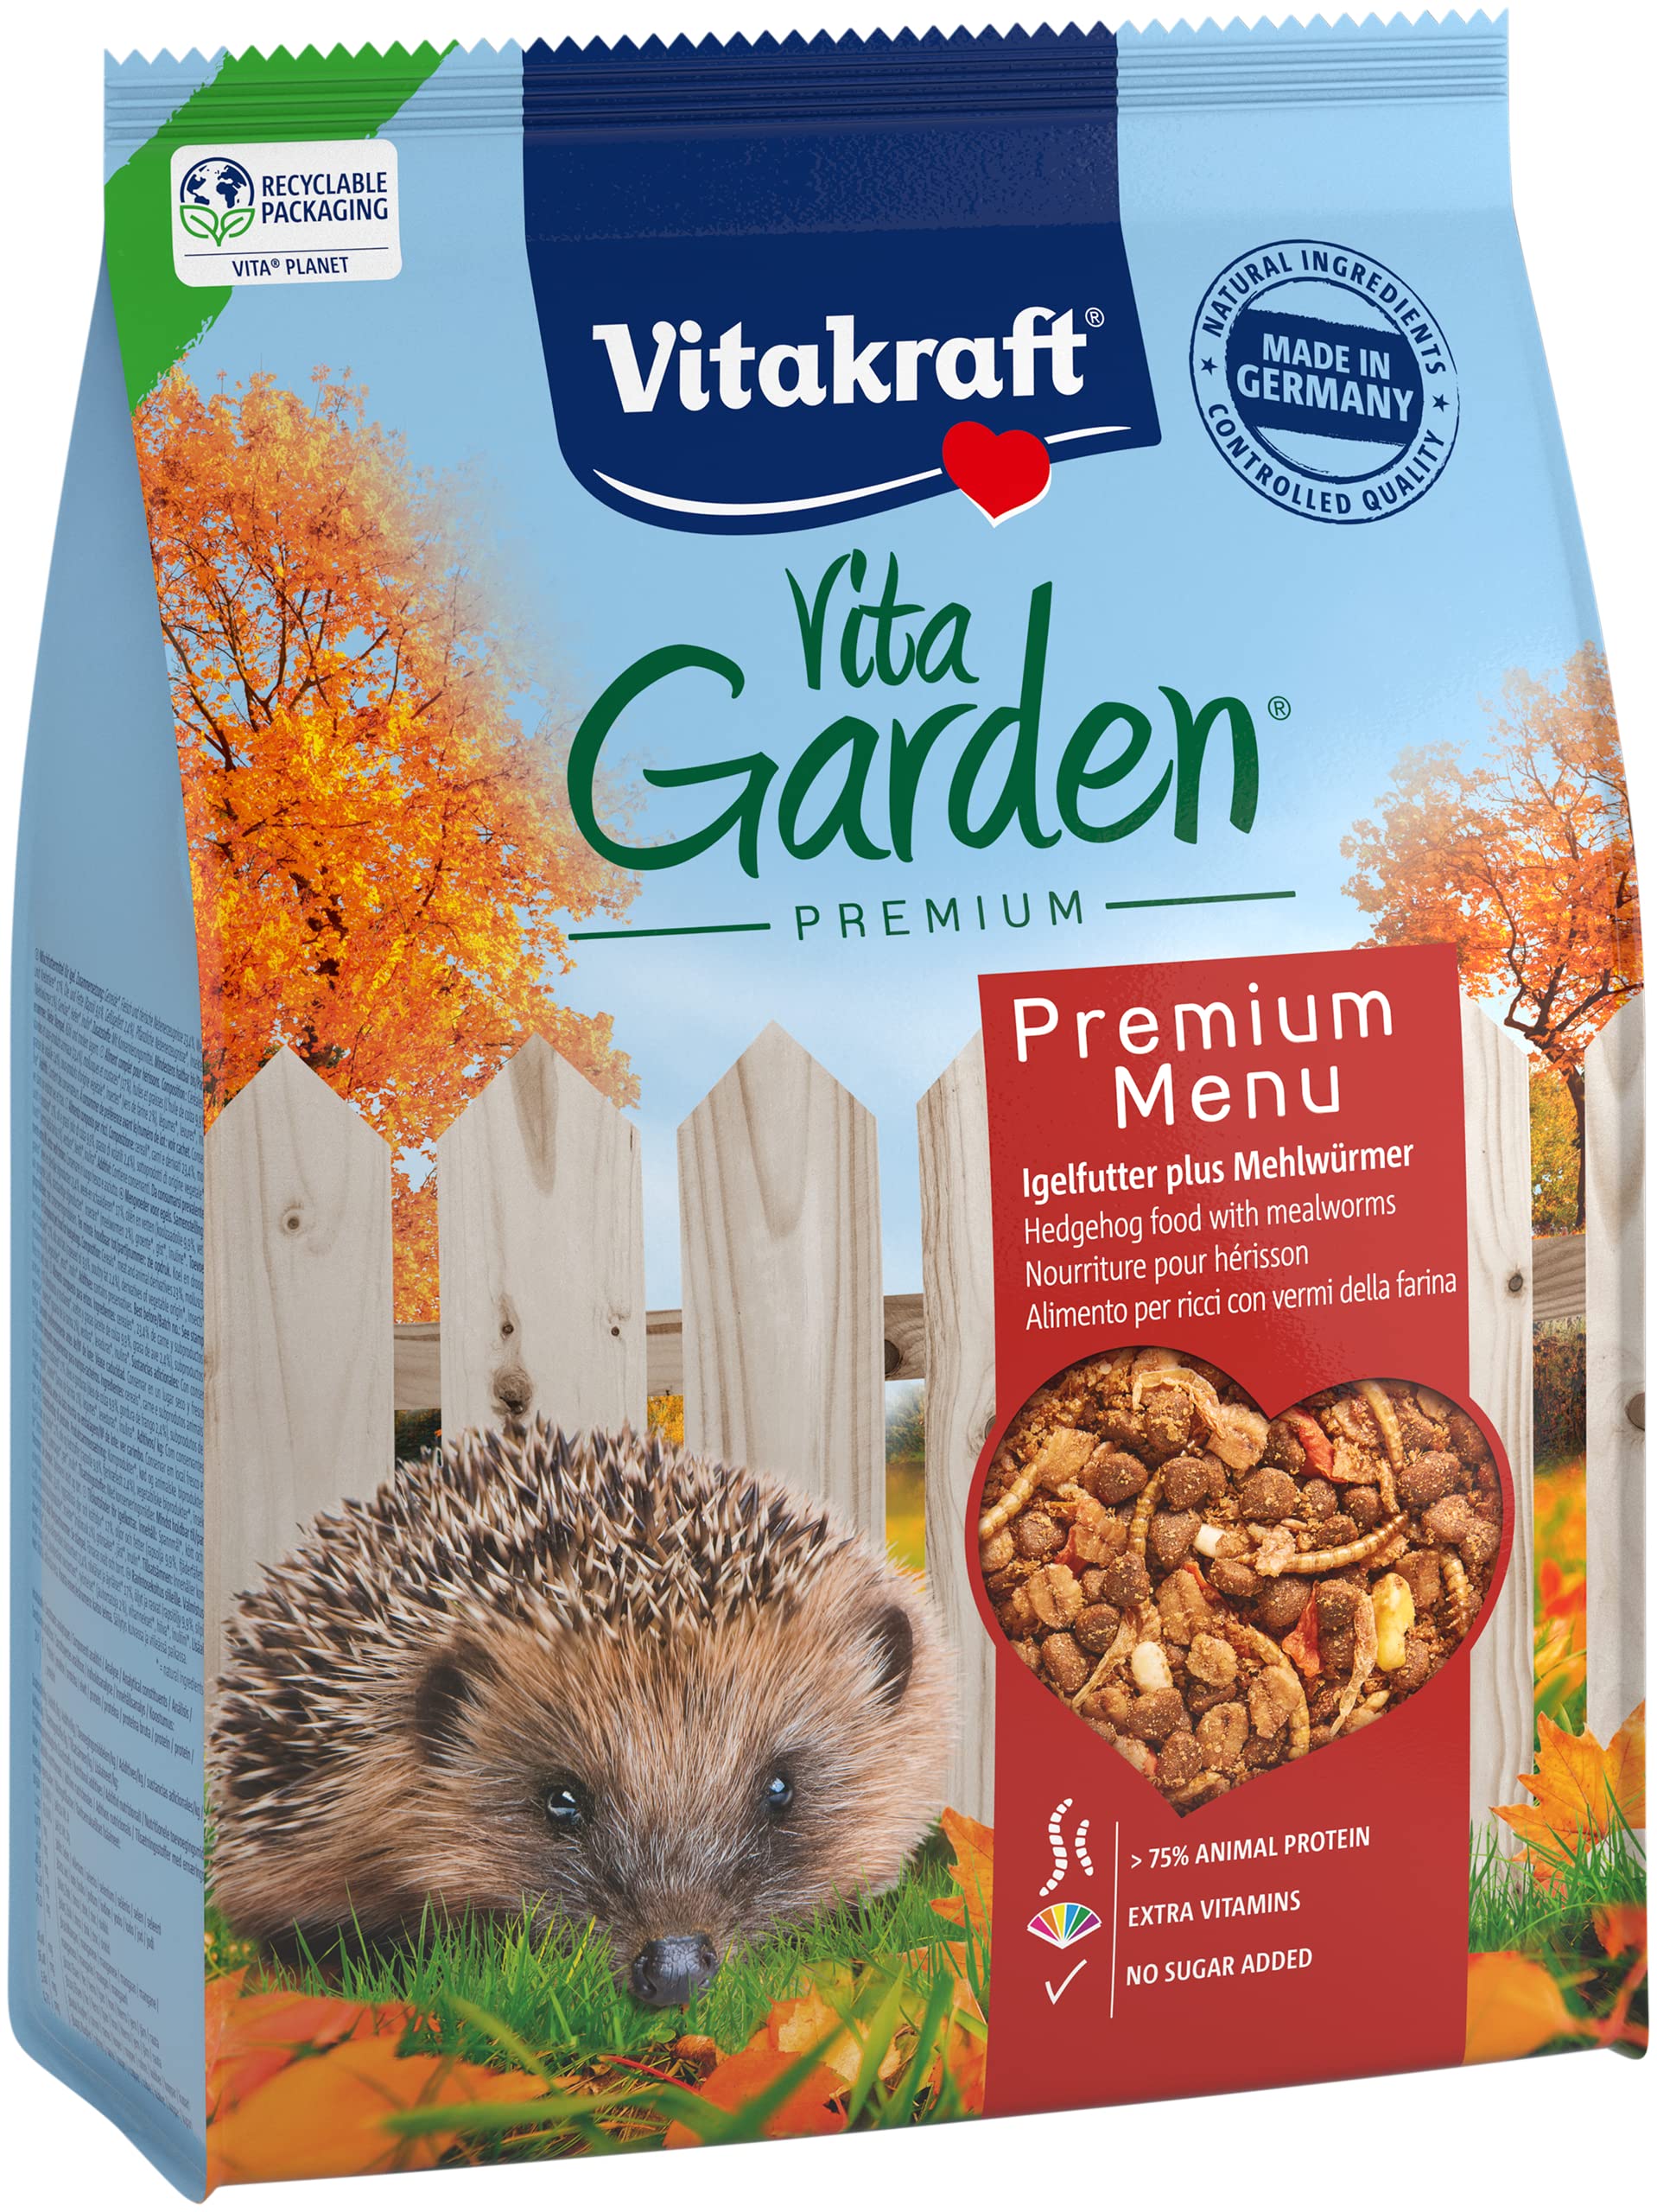 Vitakraft Vita Garden, Trockenfutter für Igel, für hilfsbedürftige Igel, mit Insekten, hoher Proteinanteil (1x 2,5kg)